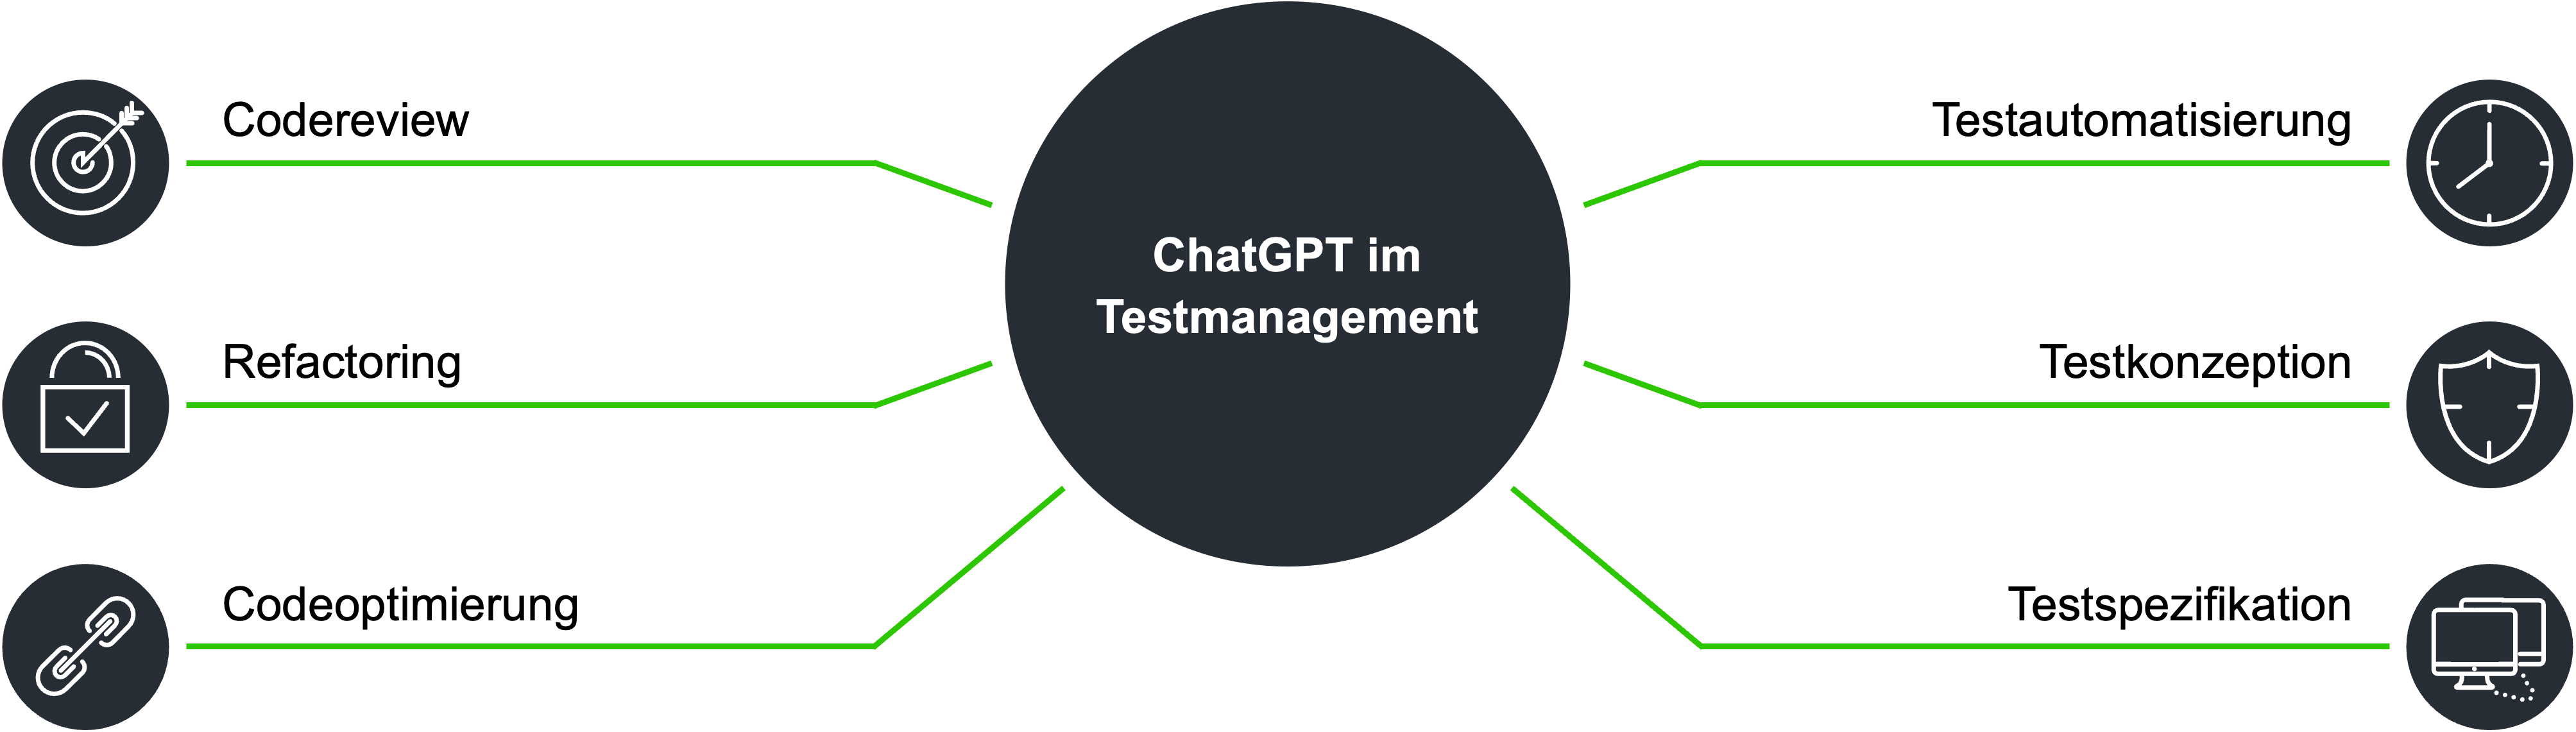 ChaGPT im Testmanagement